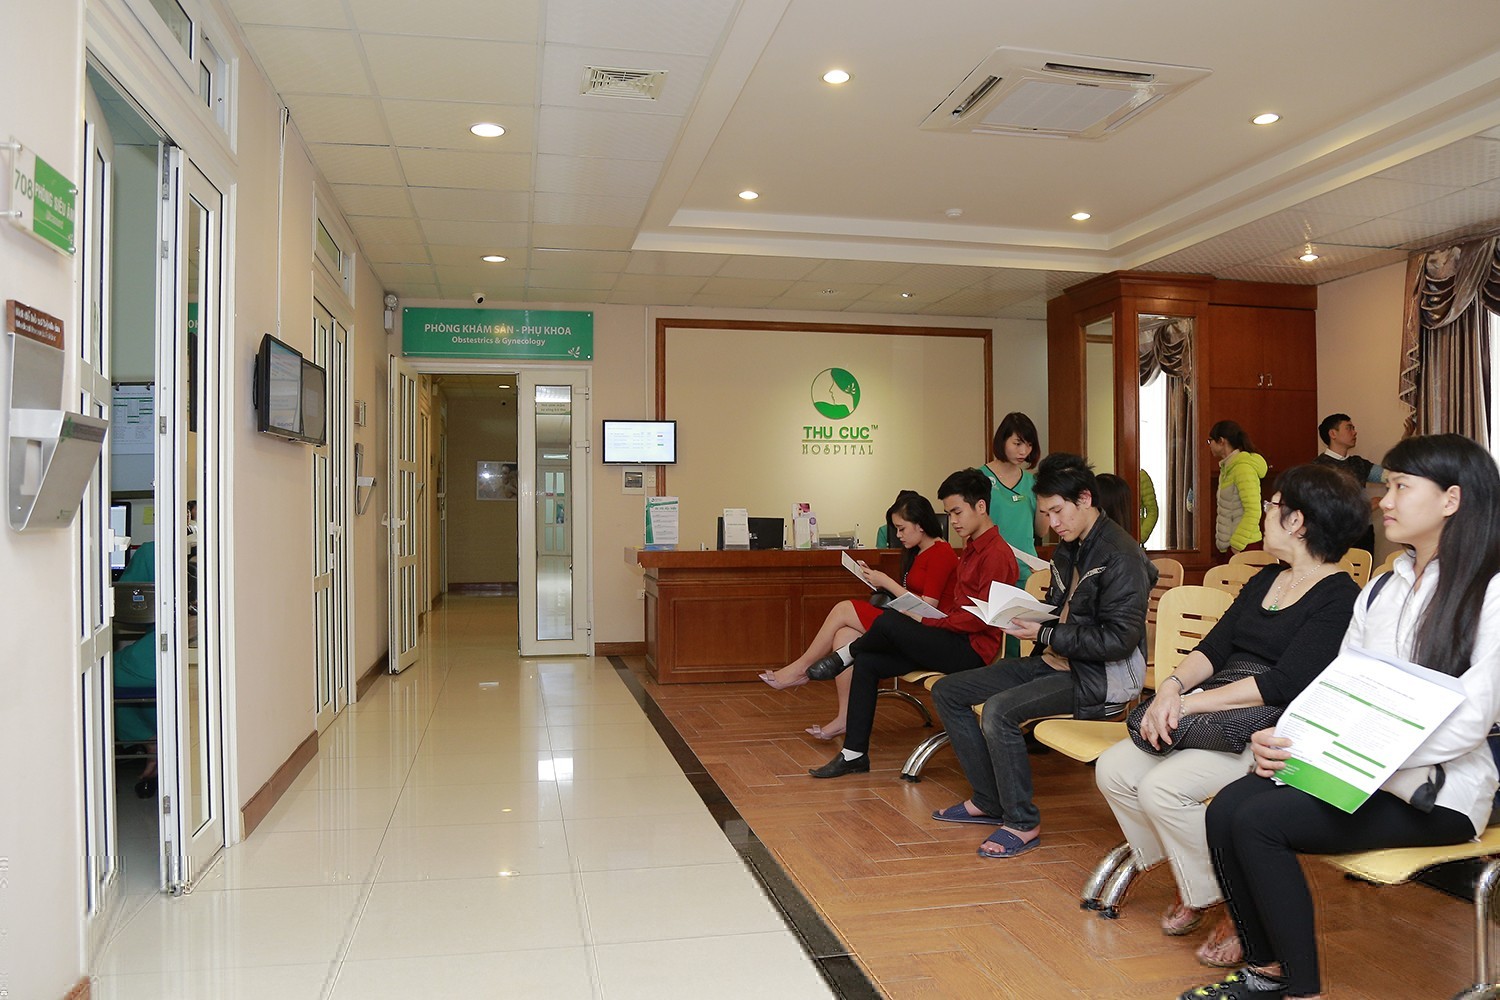 Phòng khám sản khoa Bệnh viện Đa khoa Quốc tế Thu Cúc là địa chỉ khám chữa uy tín các bệnh phụ khoa tại Hà Nội.